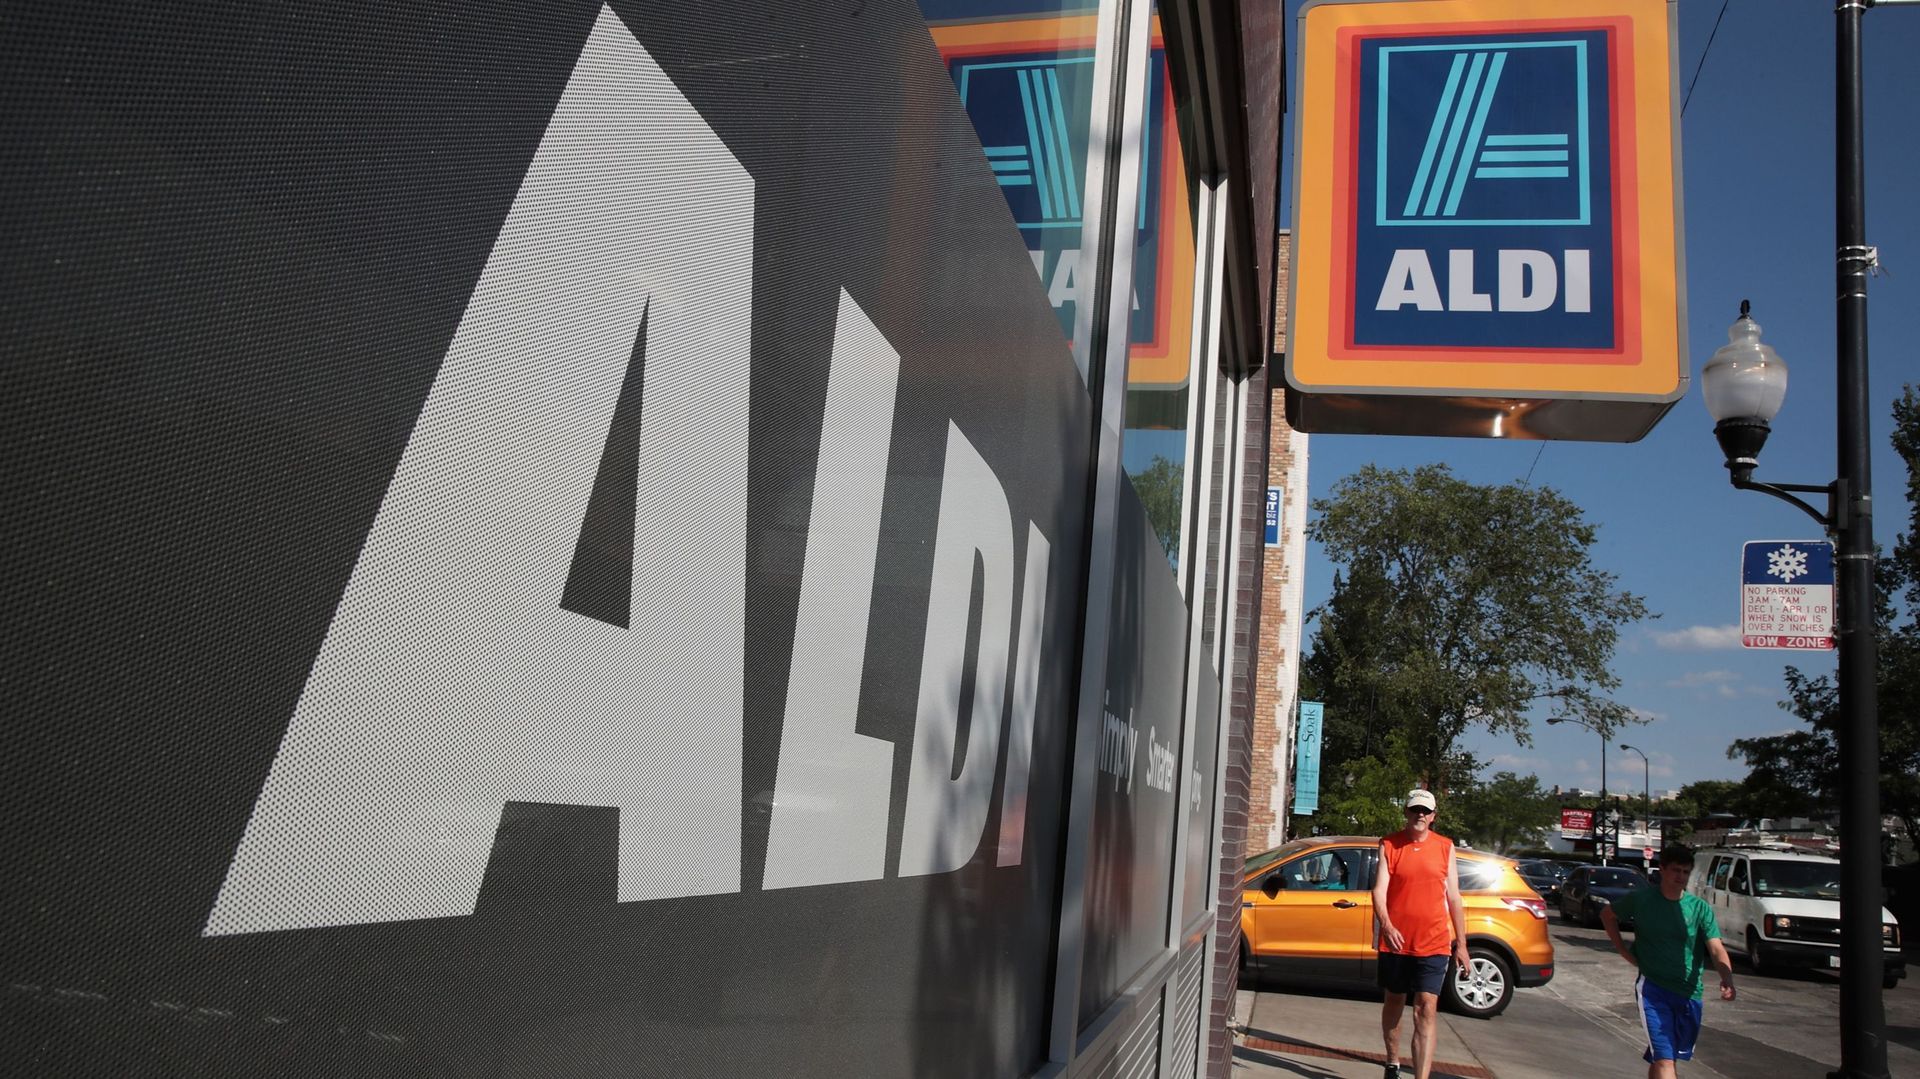 Aldi confirme un investissement de 5 milliards d'euros pour modernisation de ses magasins